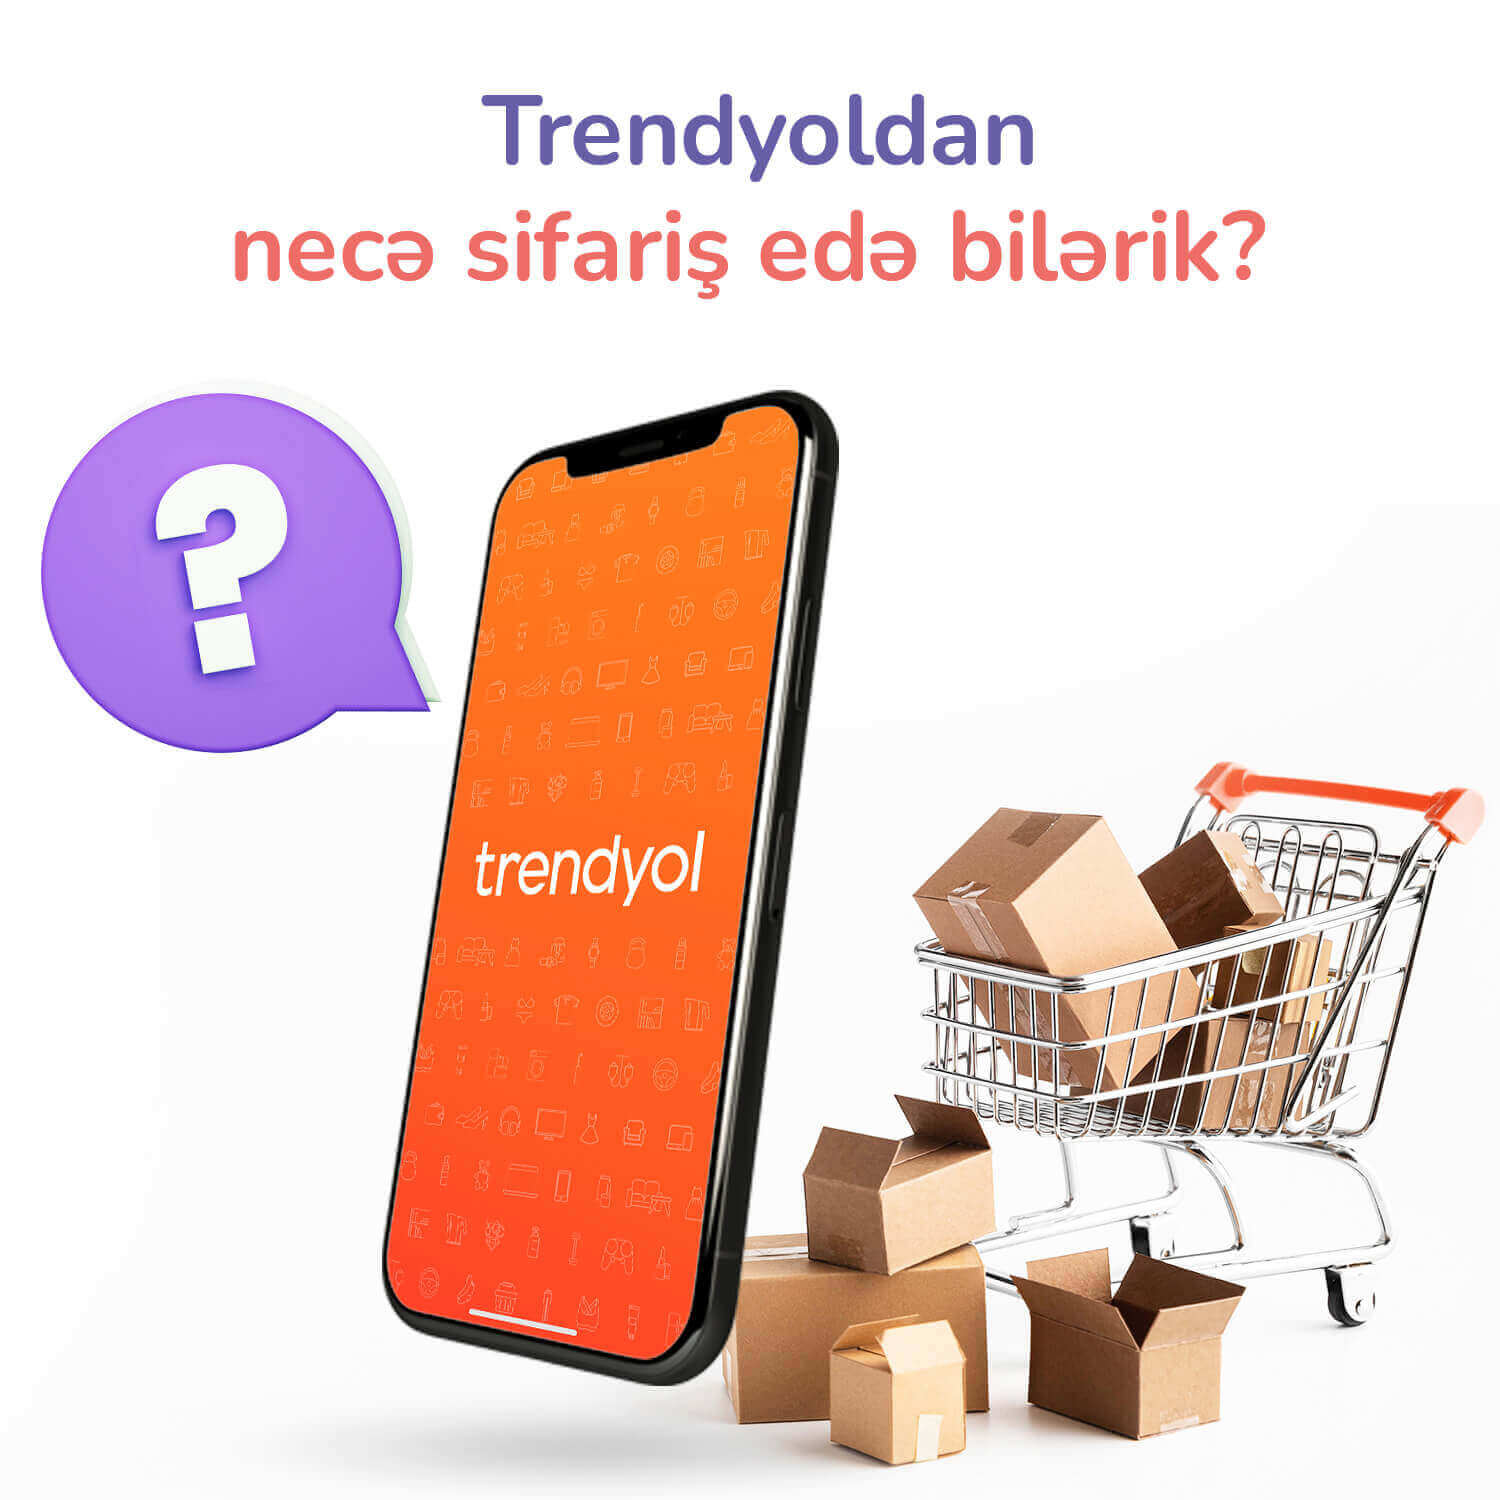 Trendyoldan necə sifariş edə bilərik?